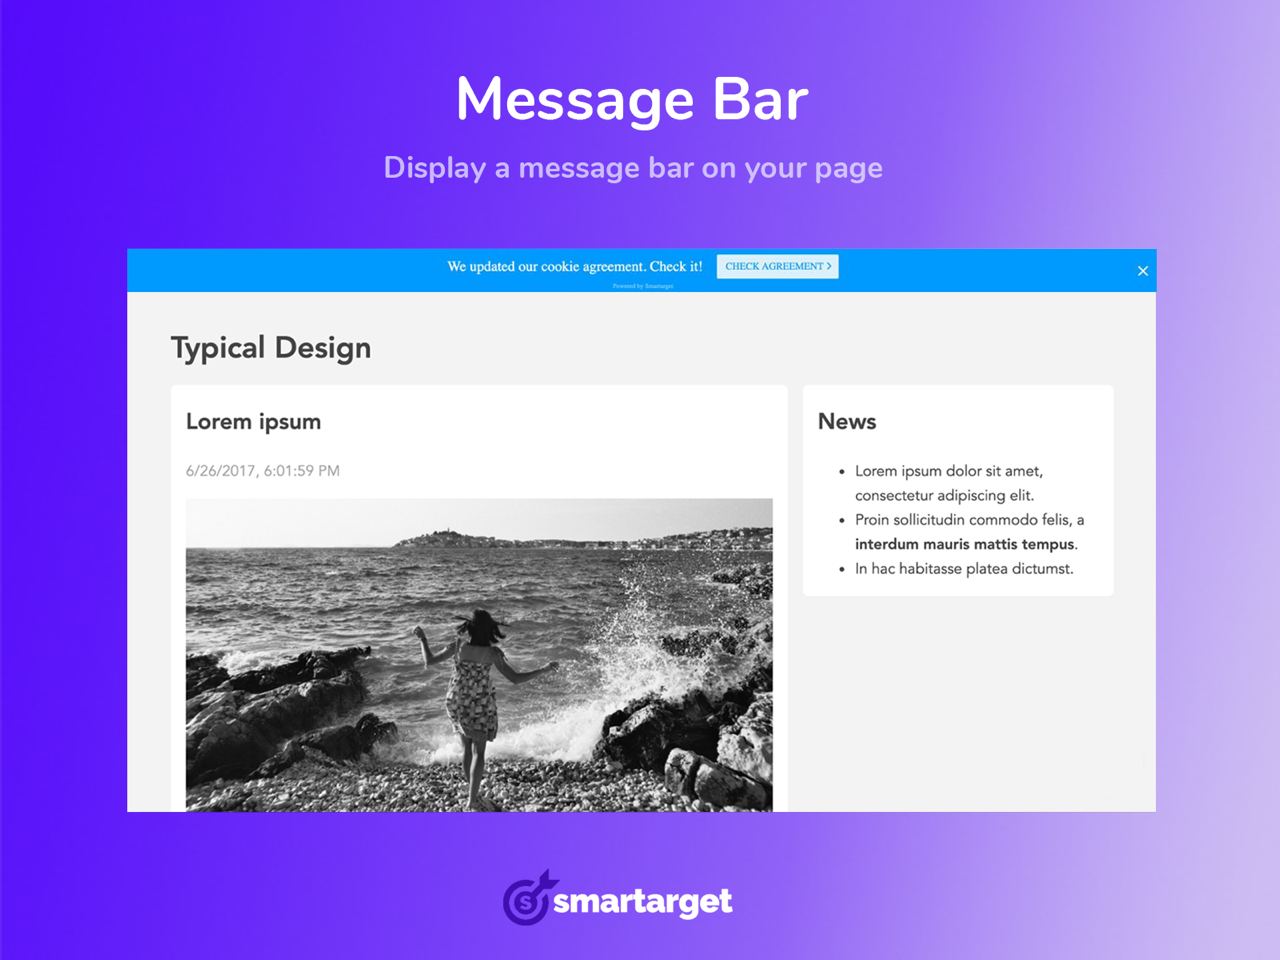 Smartarget - Message Bar Image